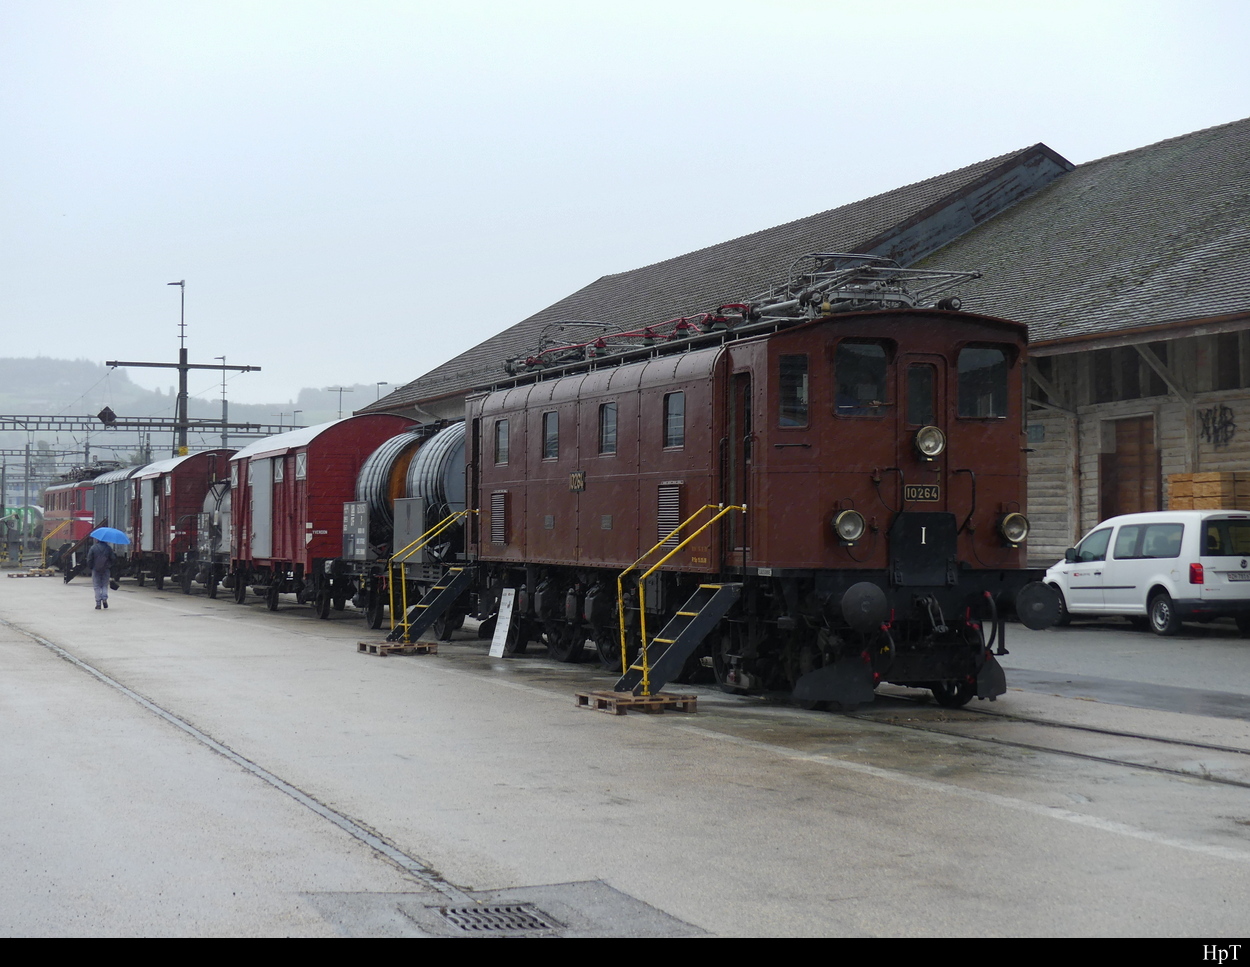 SBB - Historischer Güterzug an der Spitze die Ae 3/6  10264 ausgestellt im Areal der SBB Werksätte in Yverdon anlässlich der Feier 175 Jahre Bahnen am 02.10.2022